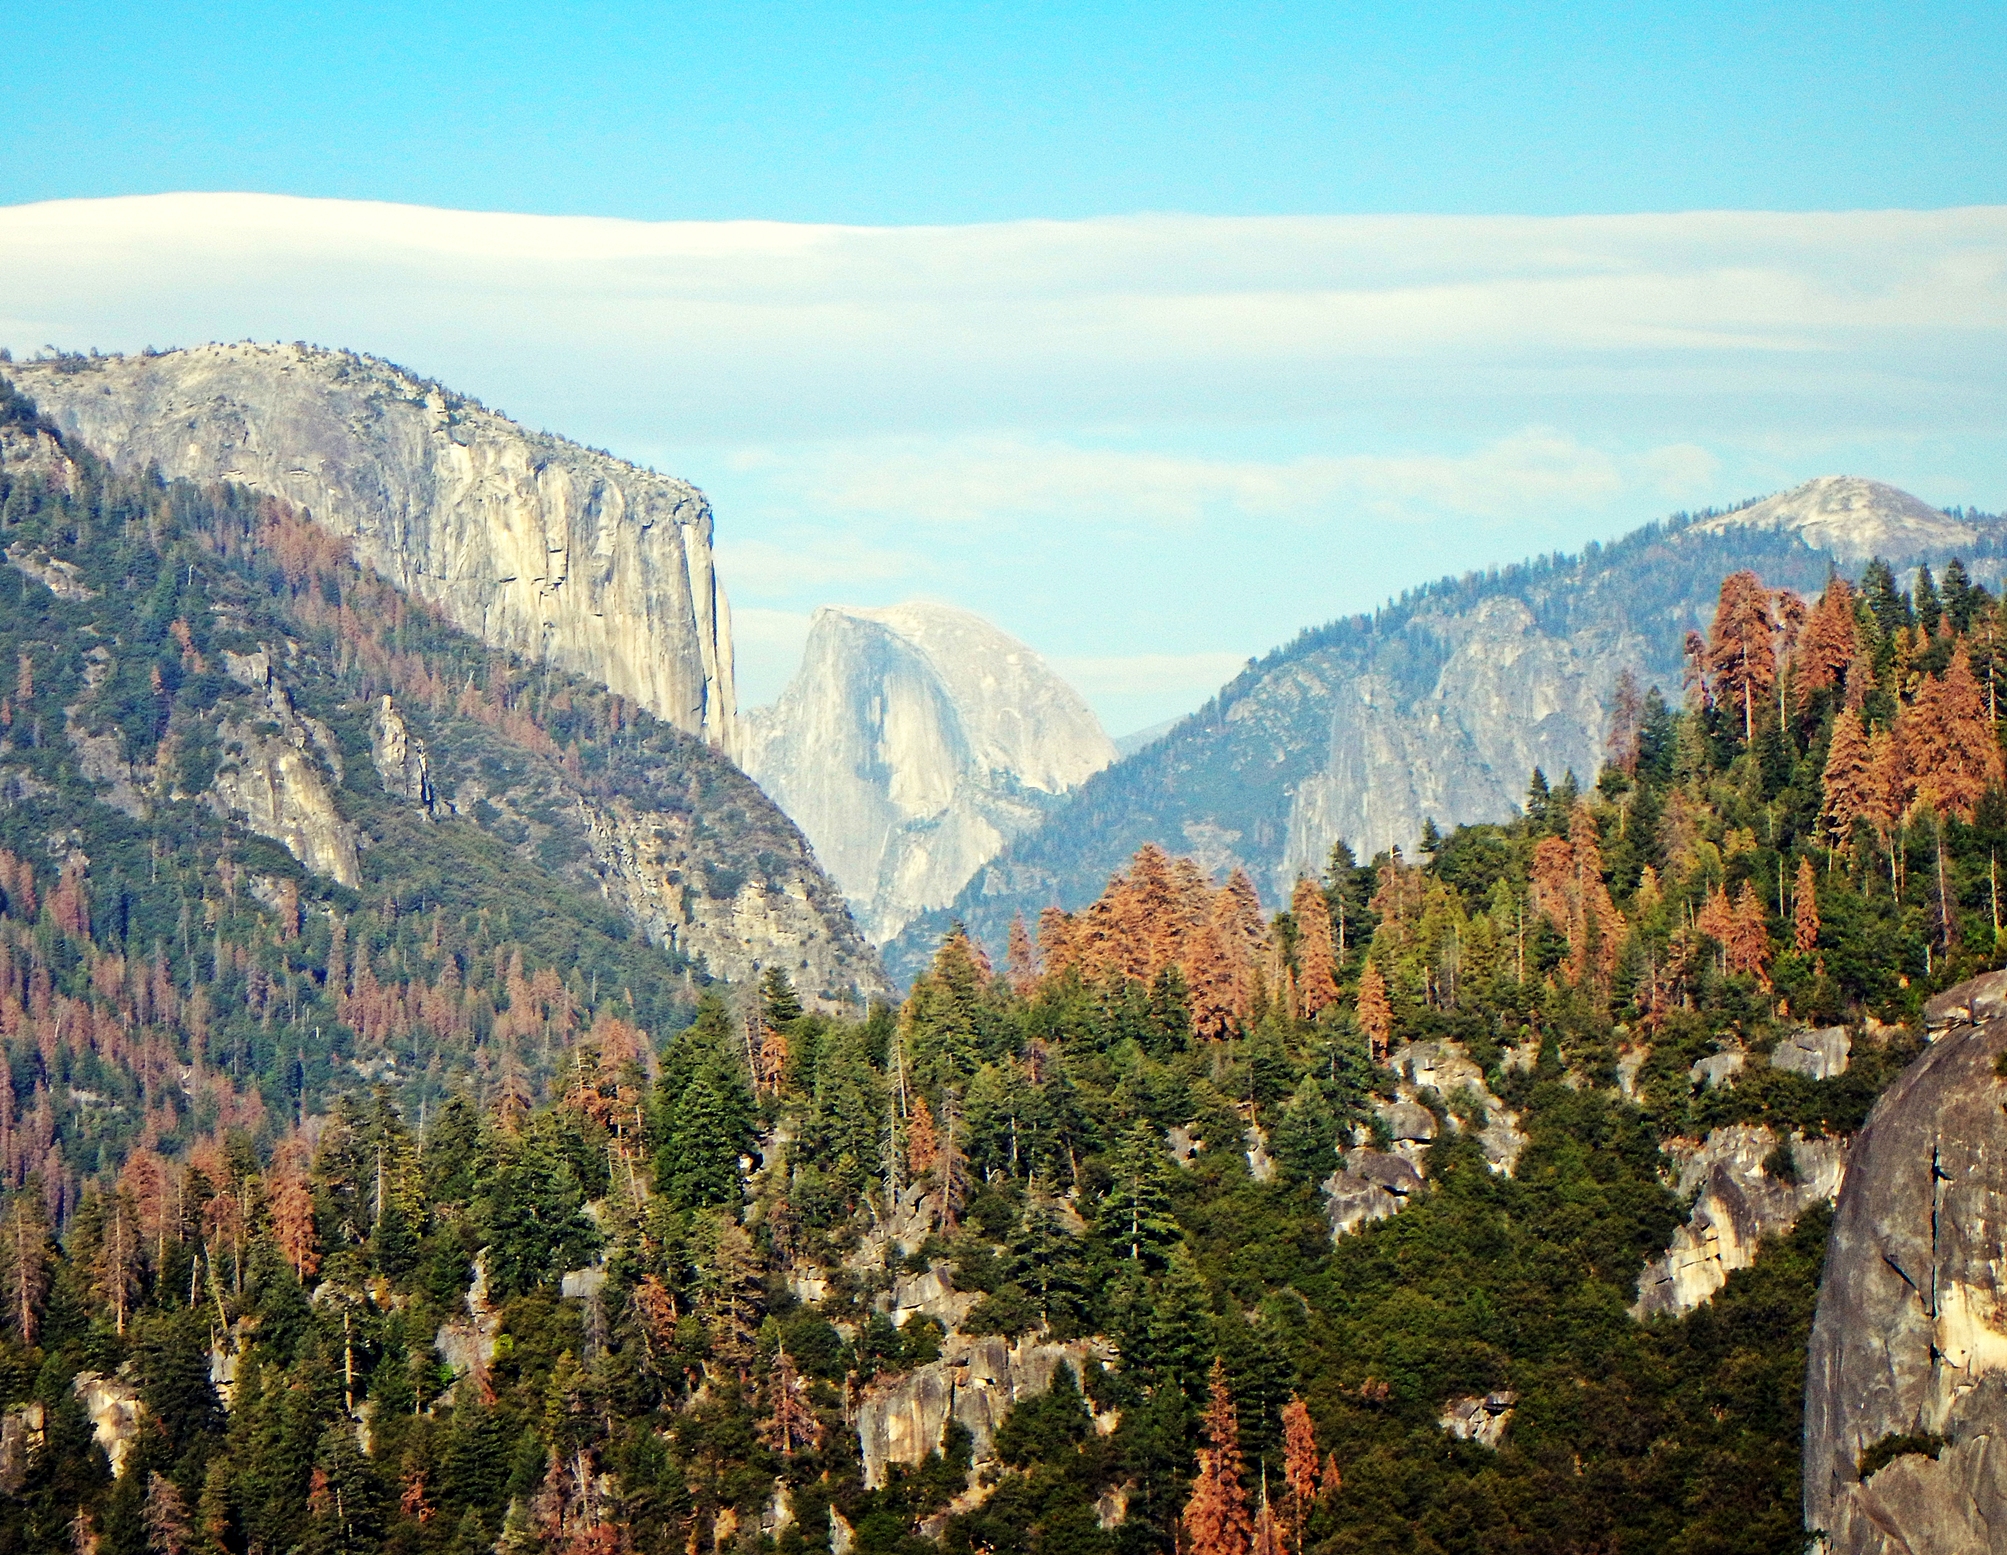 El Cap and Half Dome, Yosemite Valley